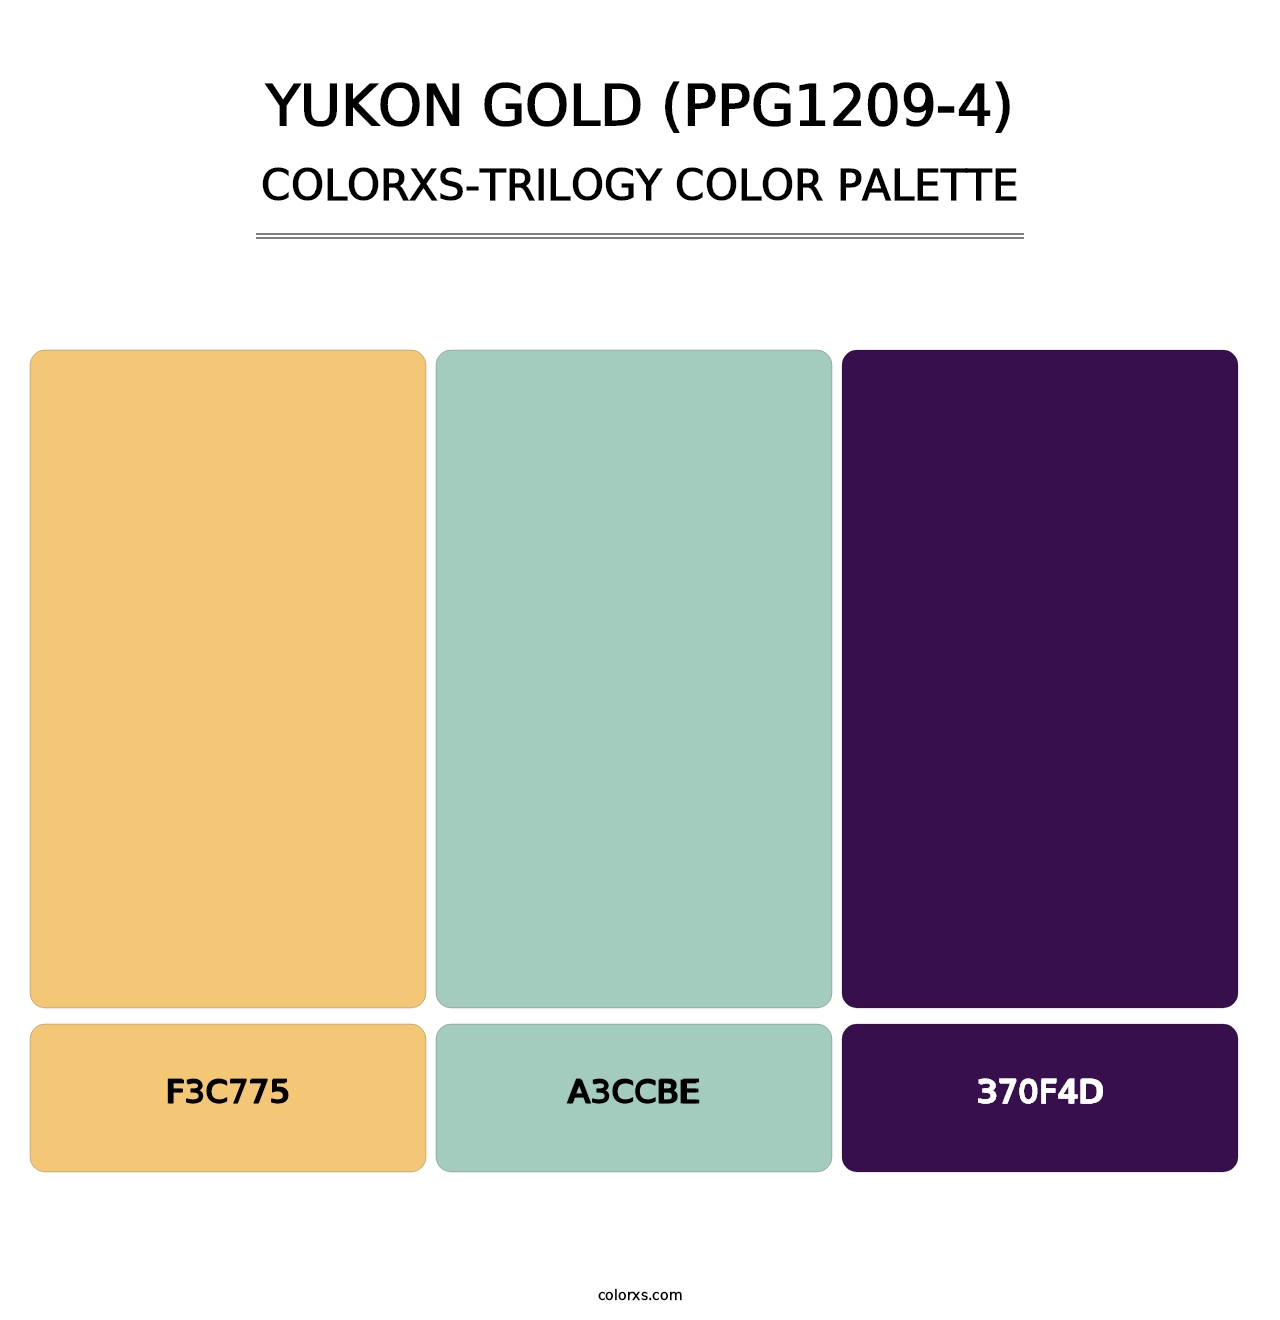 Yukon Gold (PPG1209-4) - Colorxs Trilogy Palette